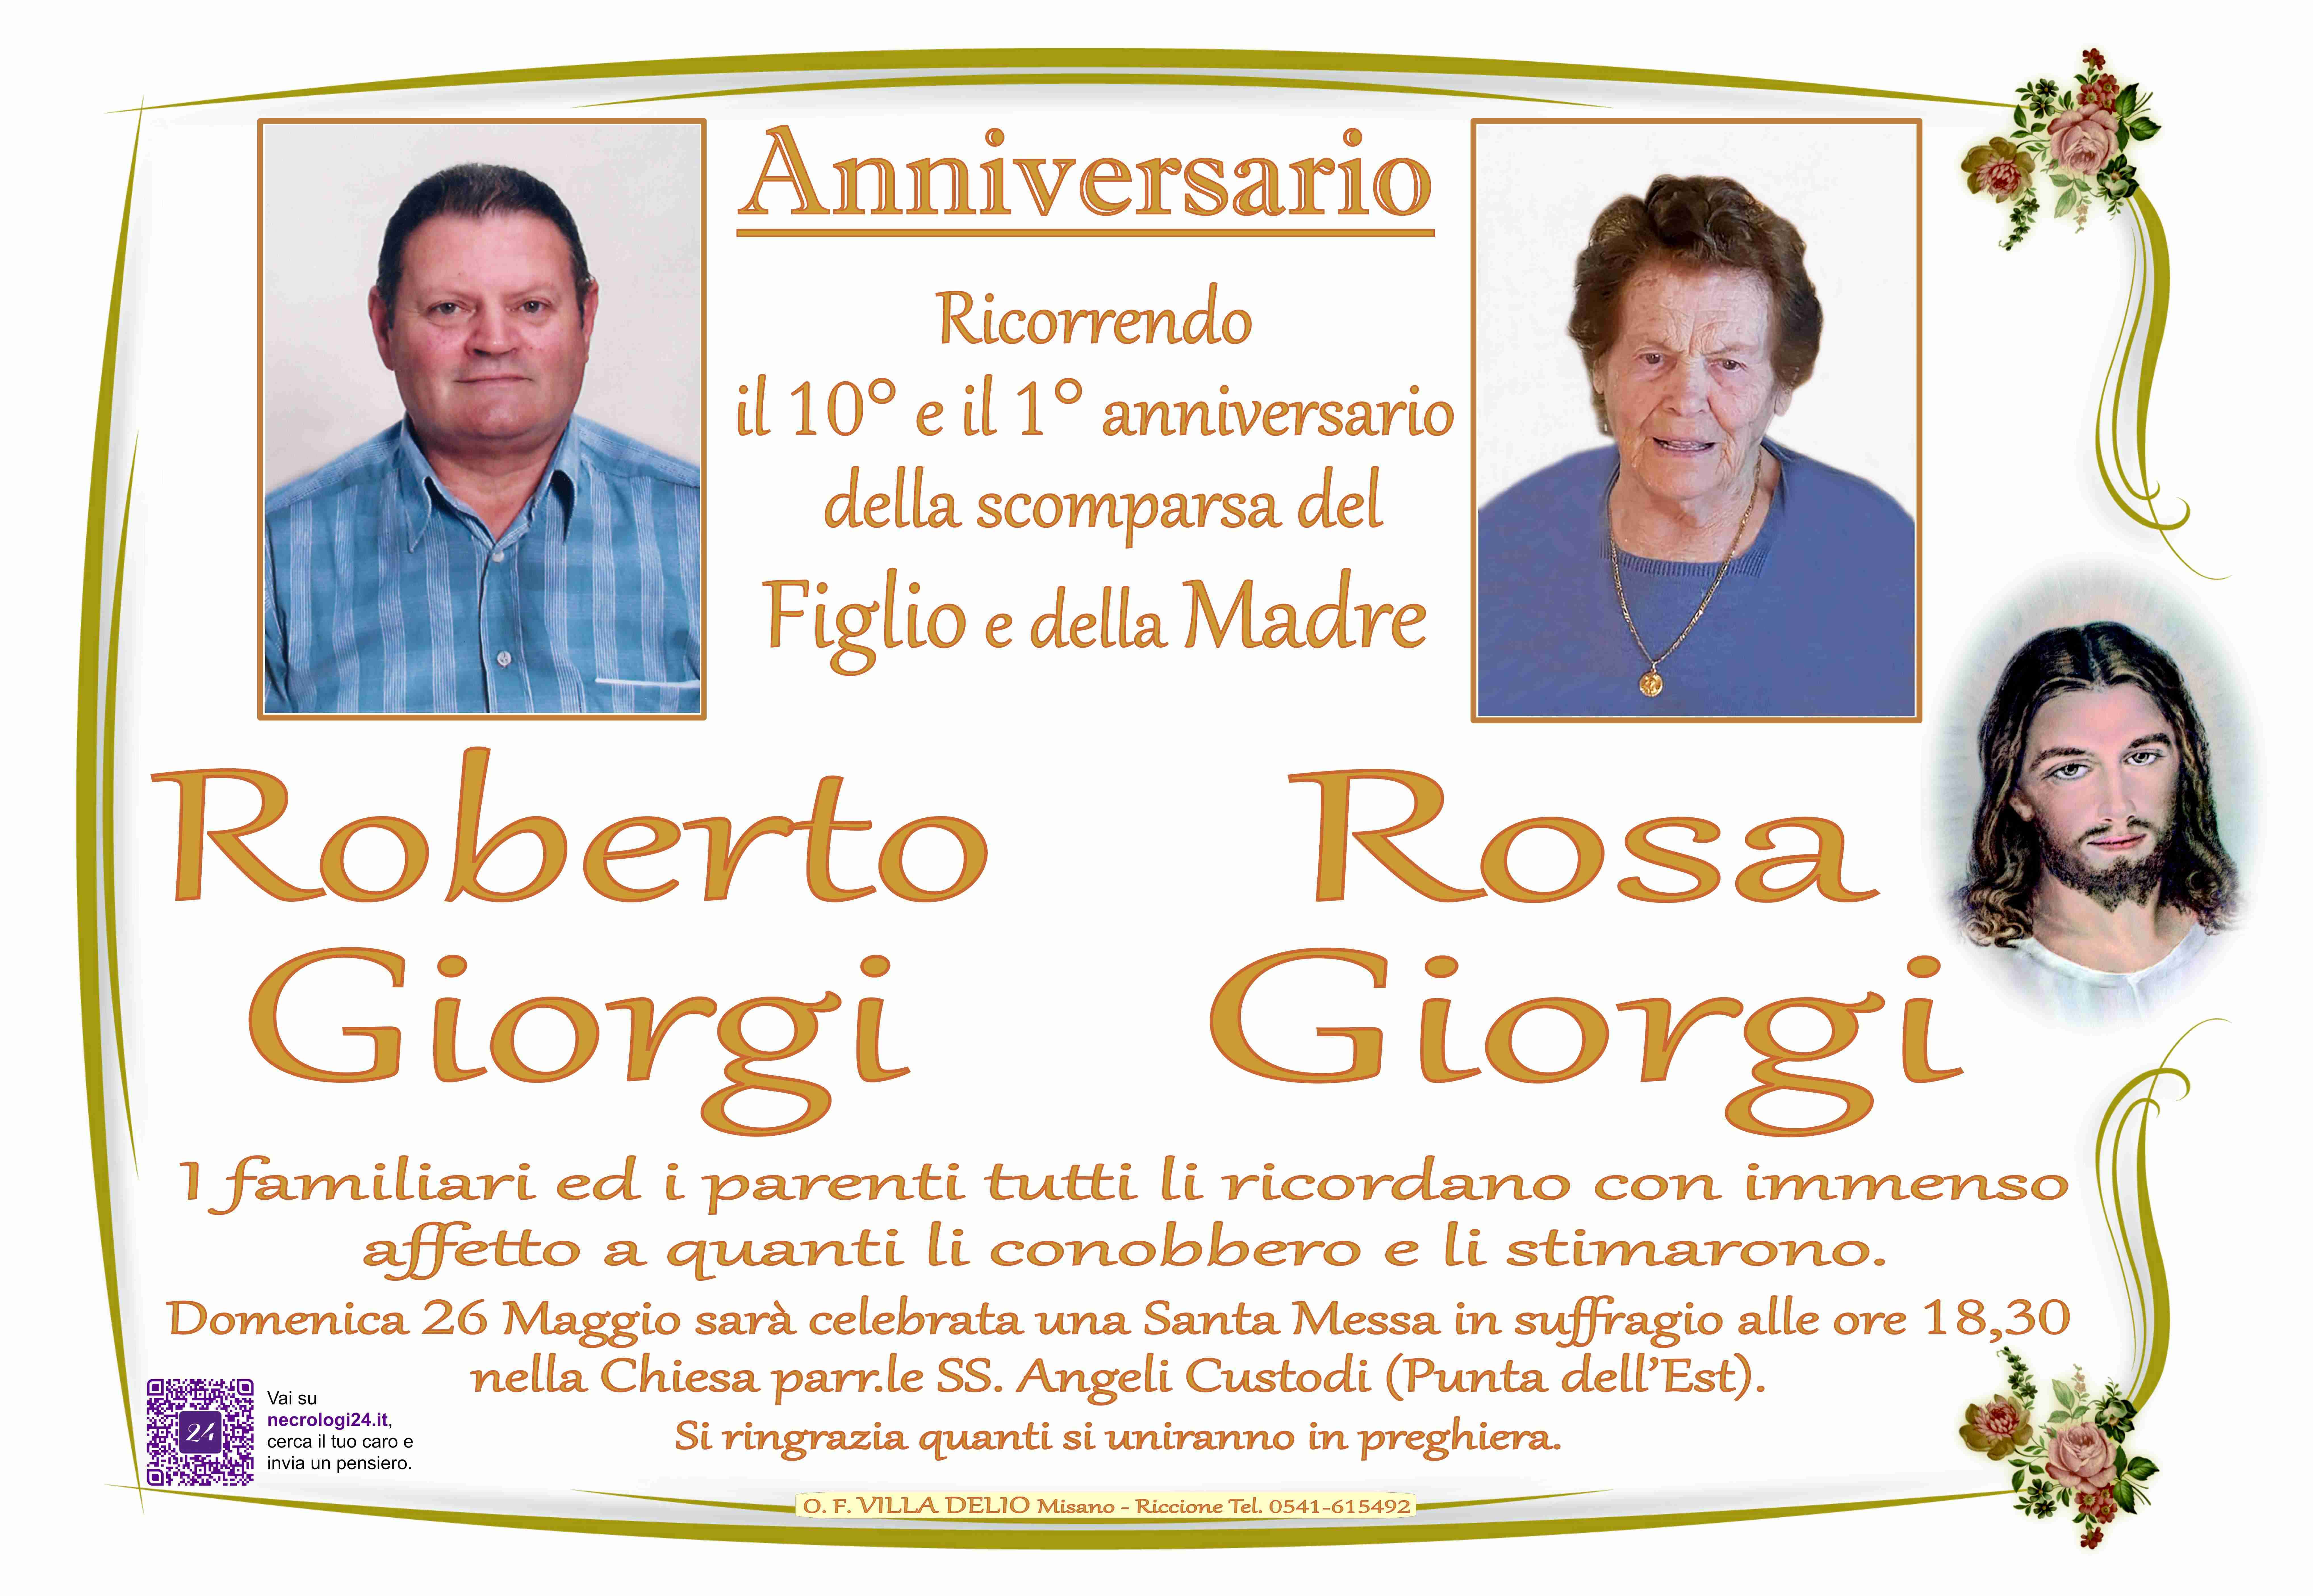 Roberto Giorgi e Rosa Giorgi